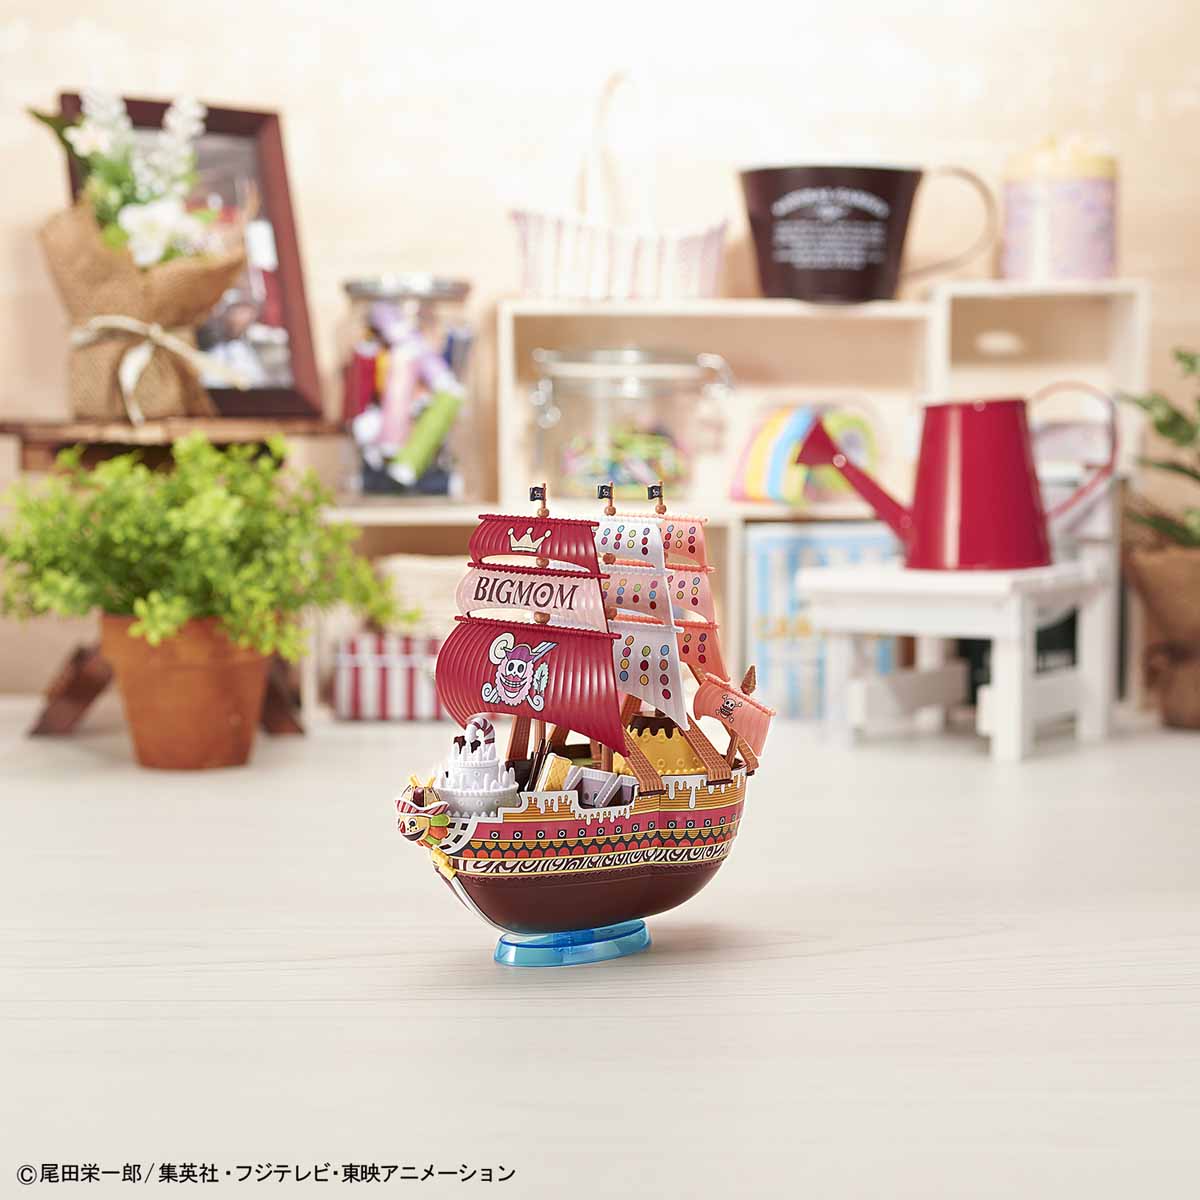 偉大なる船コレクション クイーン・ママ・シャンテ号 09